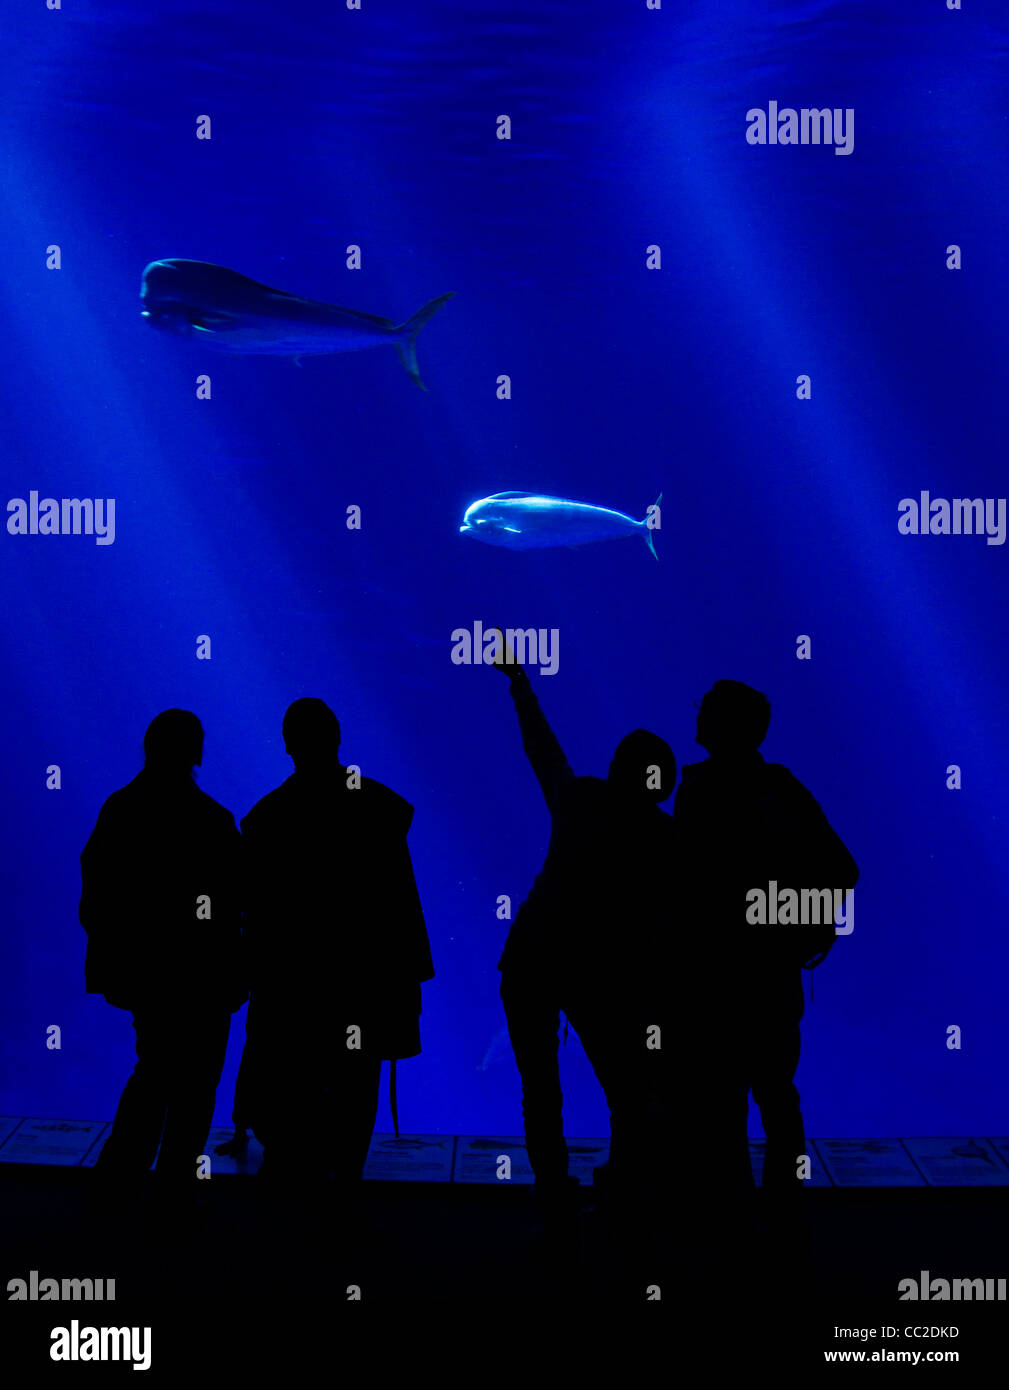 Sihouettes de personnes regardant un grand aquarium Banque D'Images